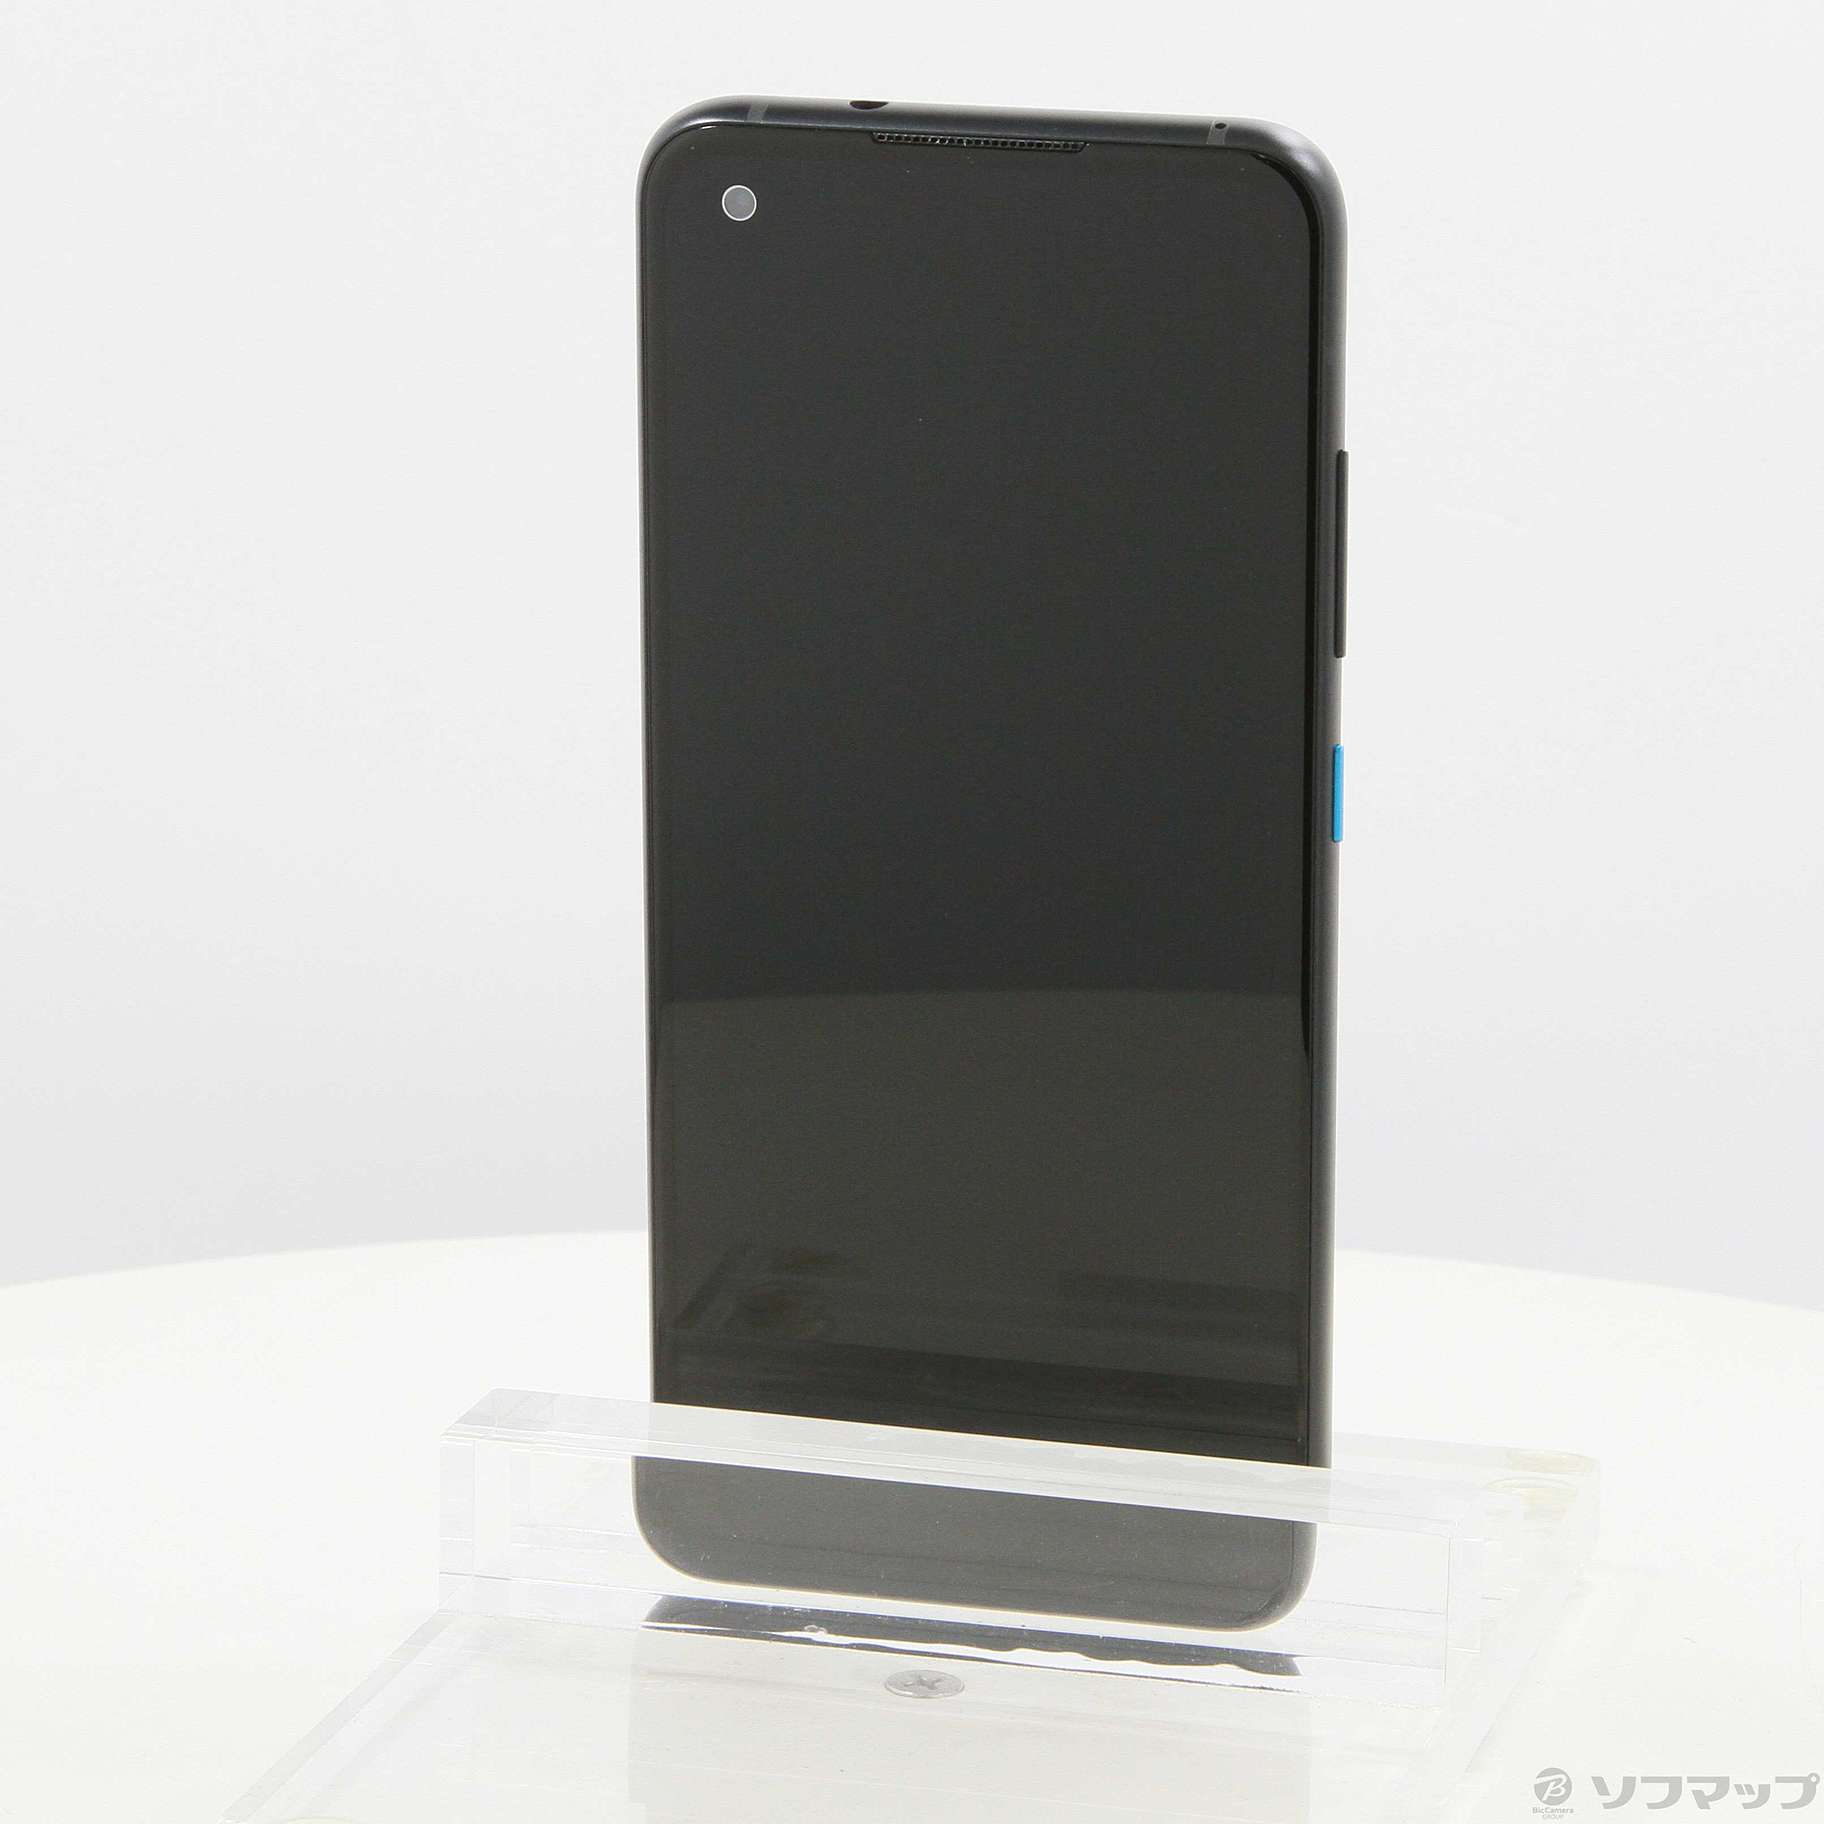 13,851円ZenFone 8 (RAM 8GBモデル) オブシディアンブラック 128GB